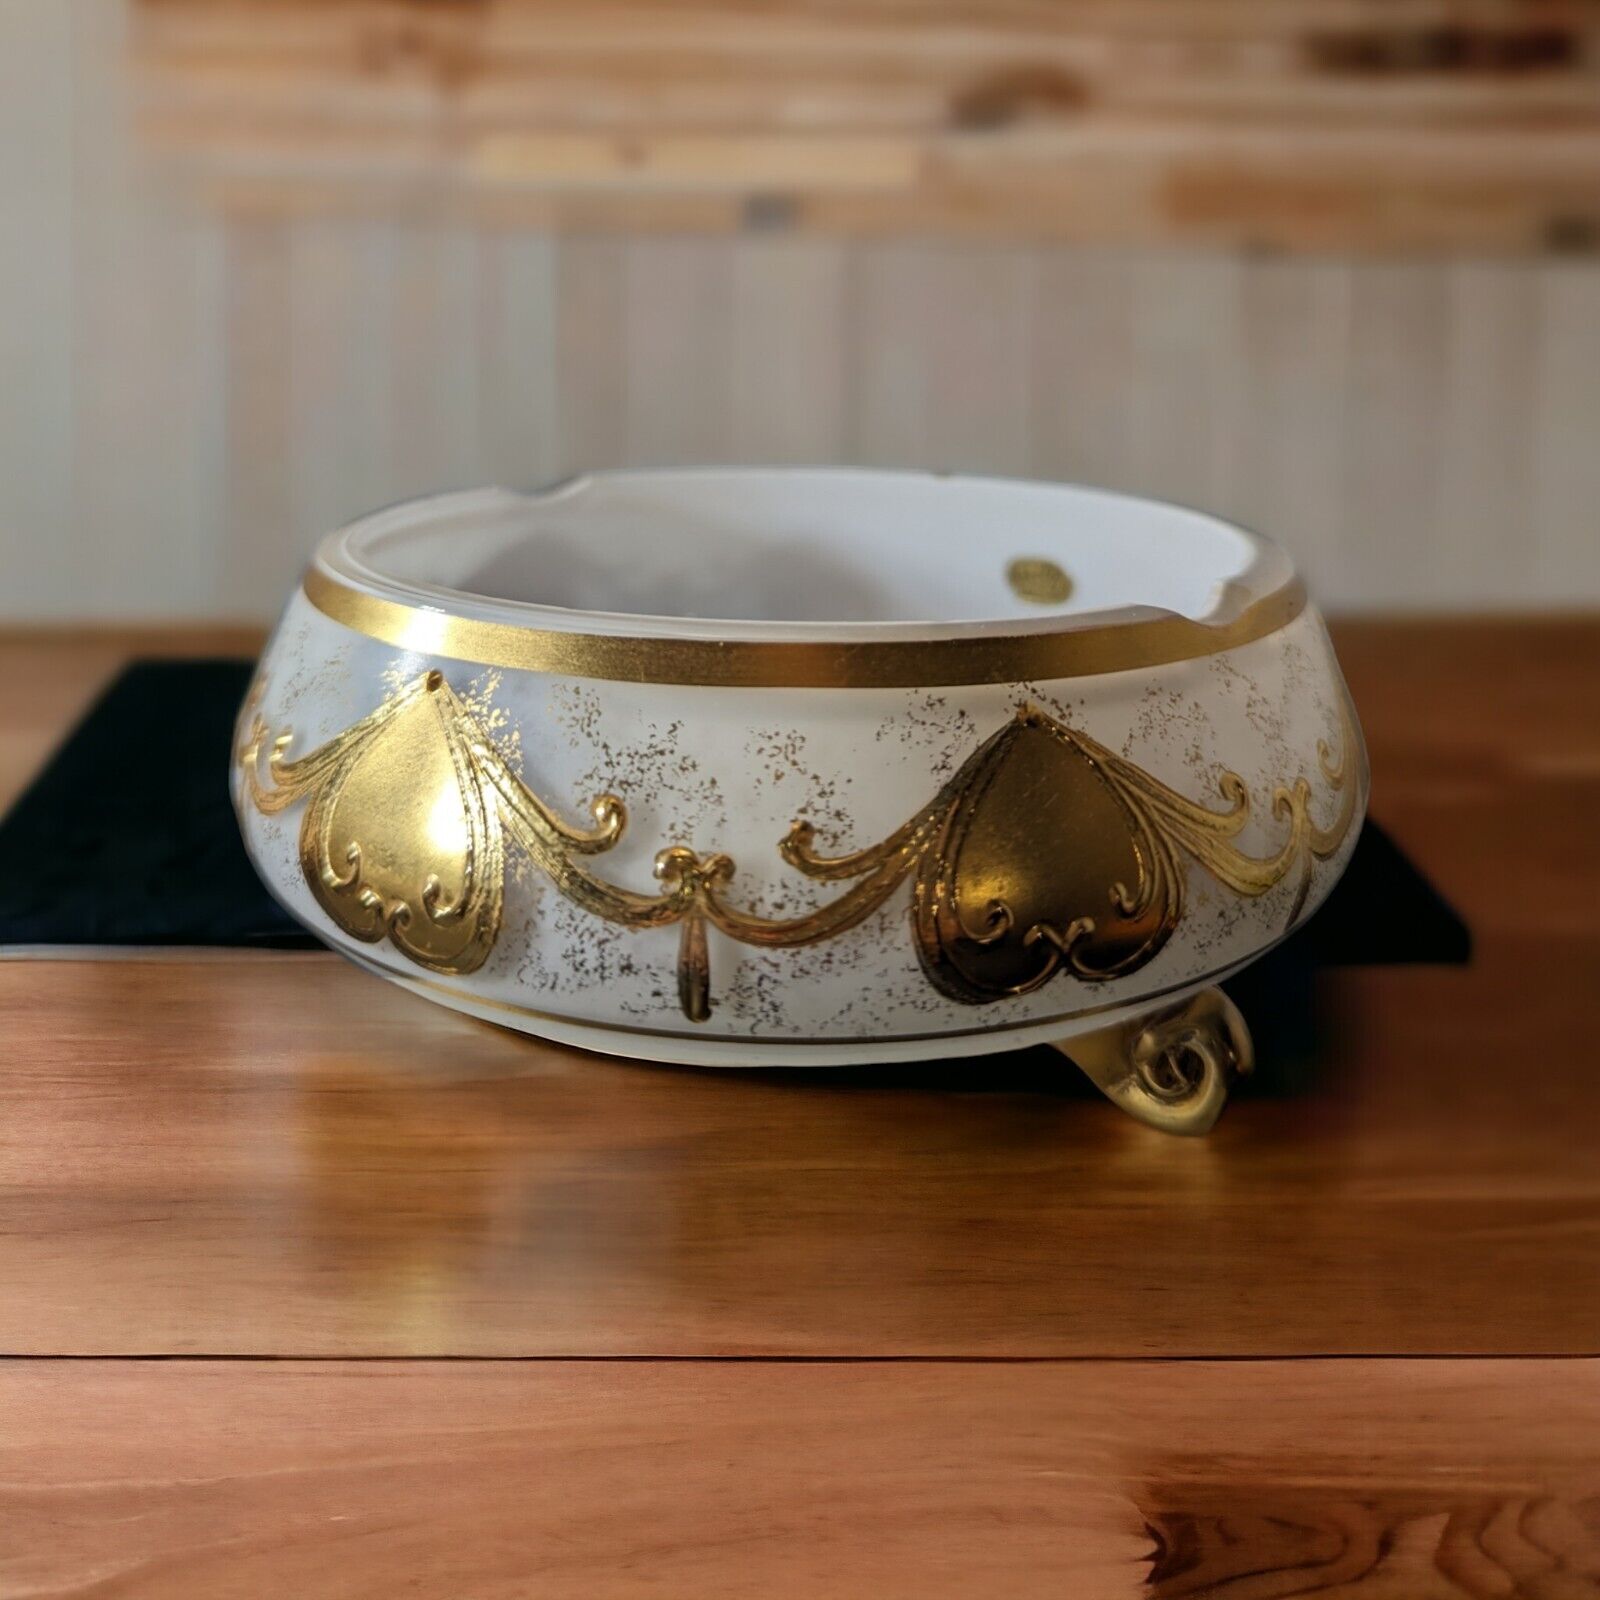 VTG Bohemian Czech Opaline Glass Bowl with Gold Motif Smoke Bowl/Candy Bowl READ